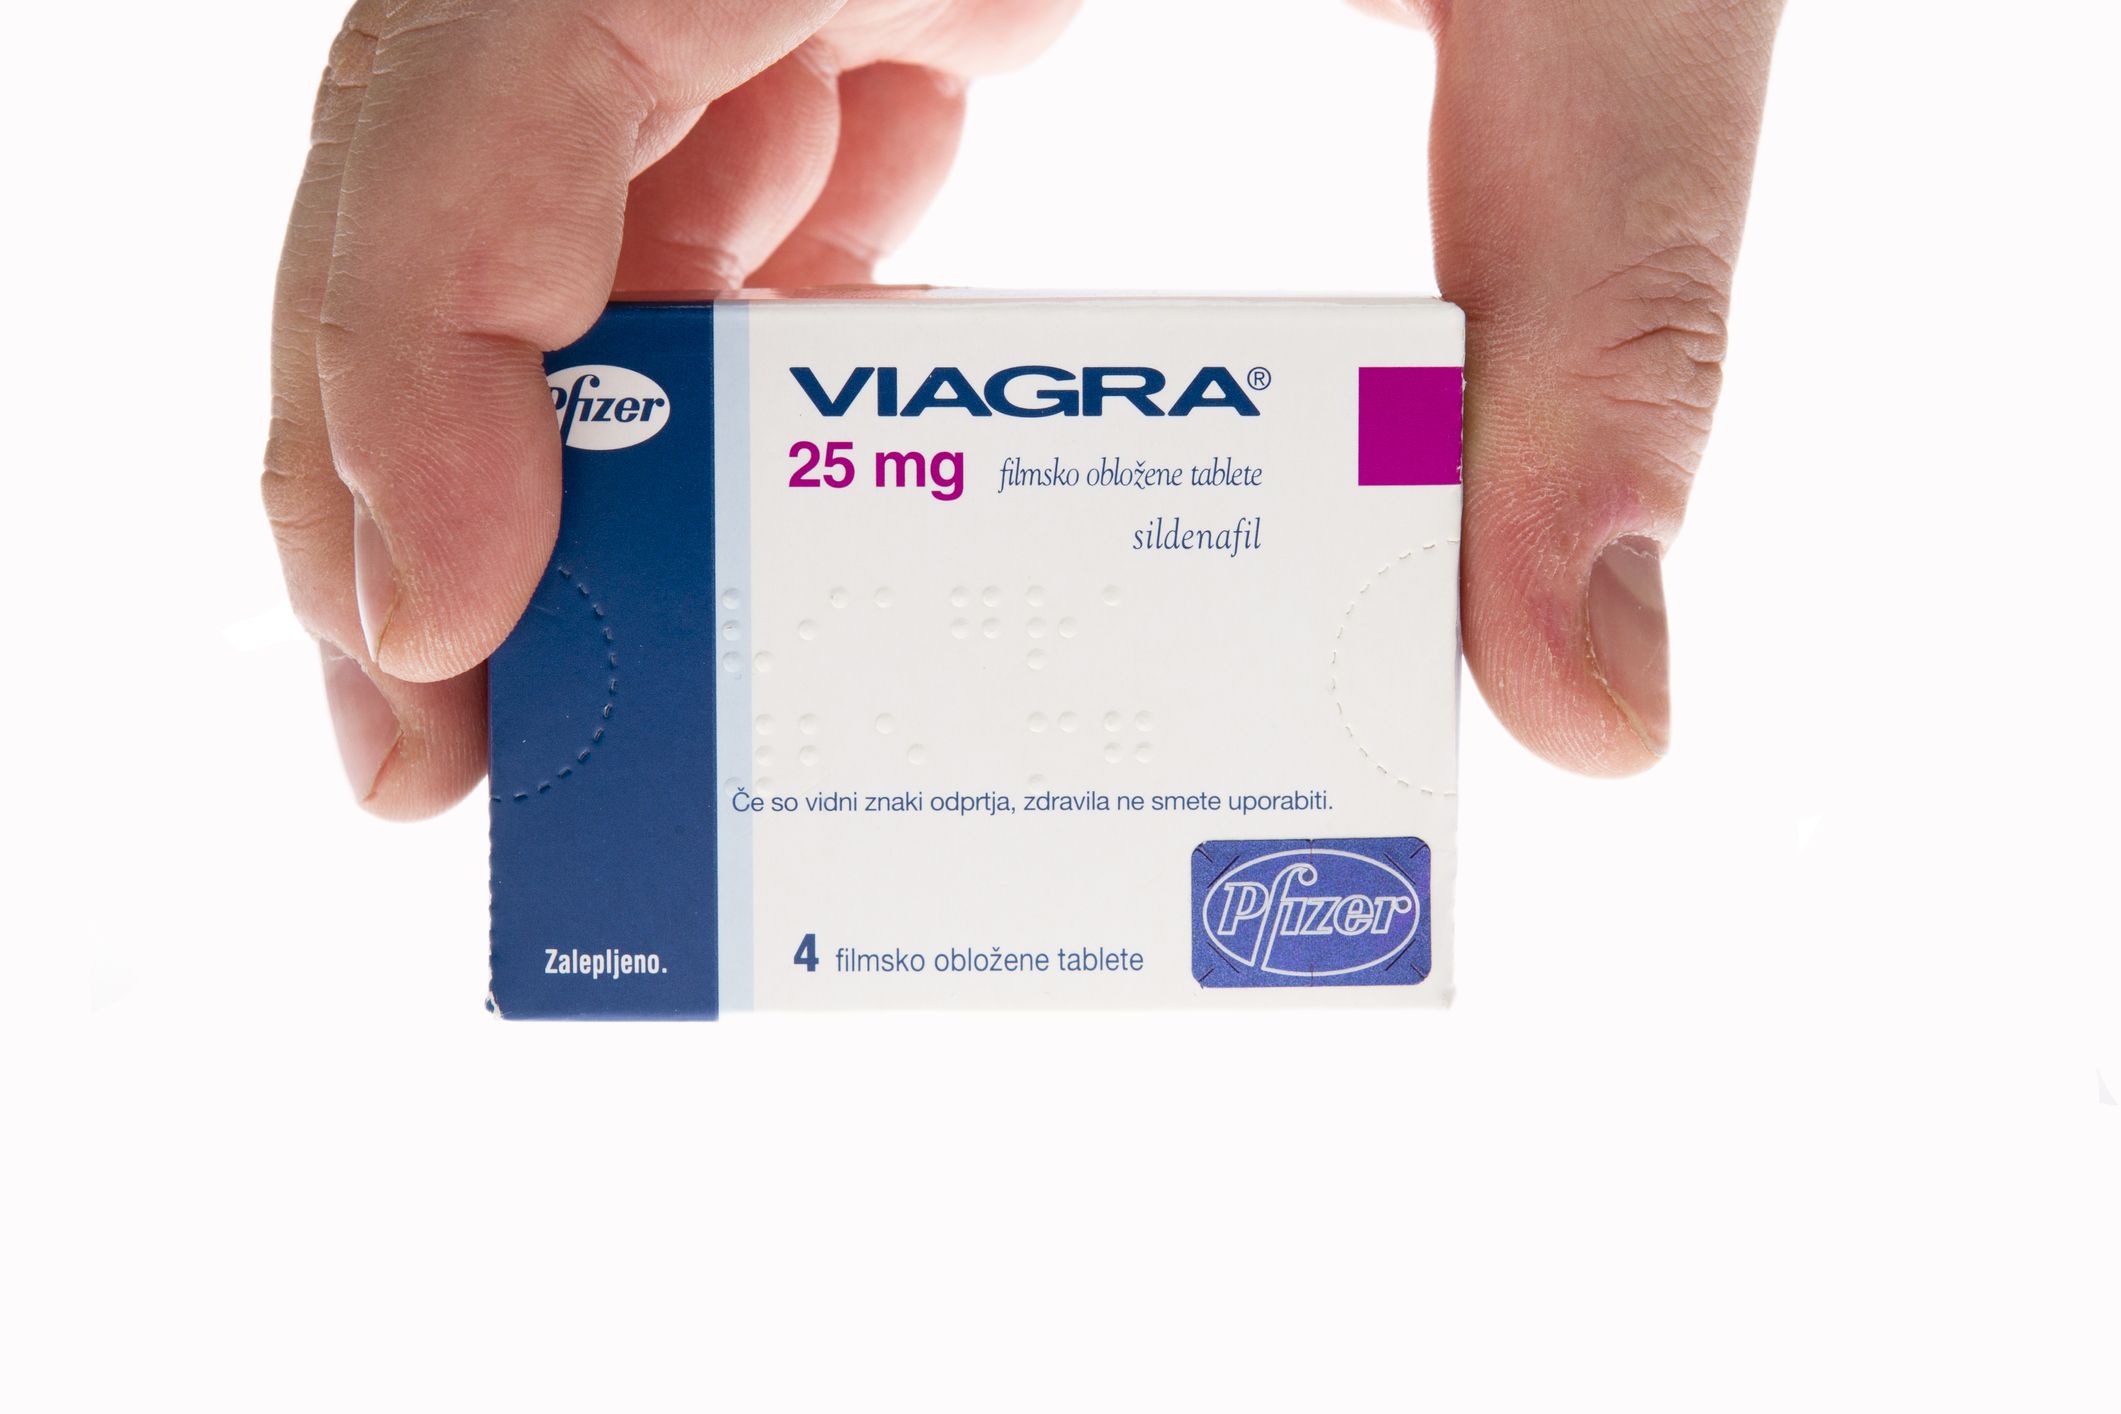 Hogy hat percről percre a Viagra?